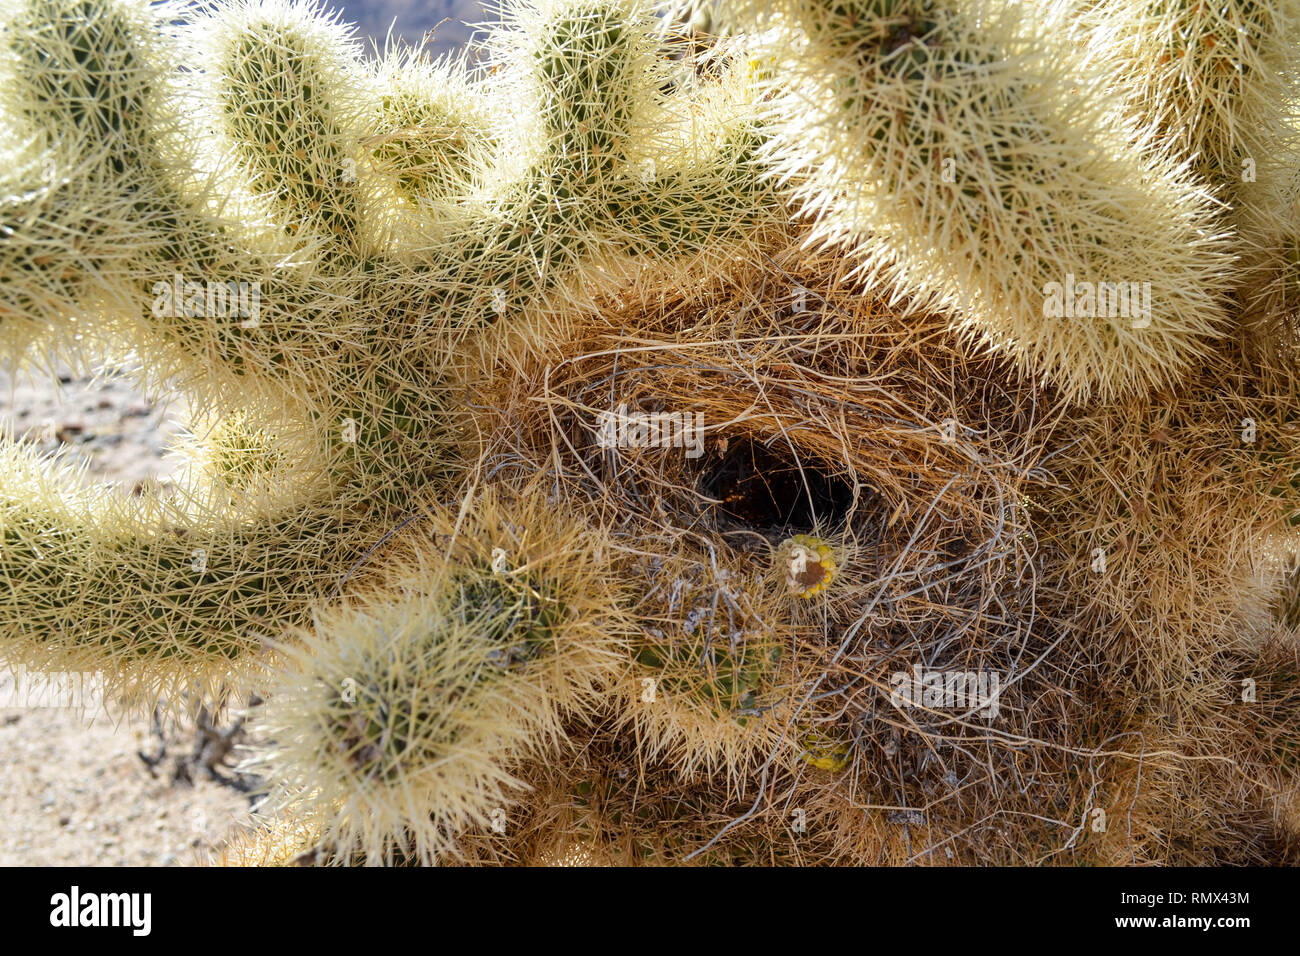 Teddybär cholla Cactus (Cylindropuntia Bigelovii) mit einem Kaktus wren (Campylorhynchus brunneicapillus) Nest, Joshua Tree National Park, Kalifornien Stockfoto